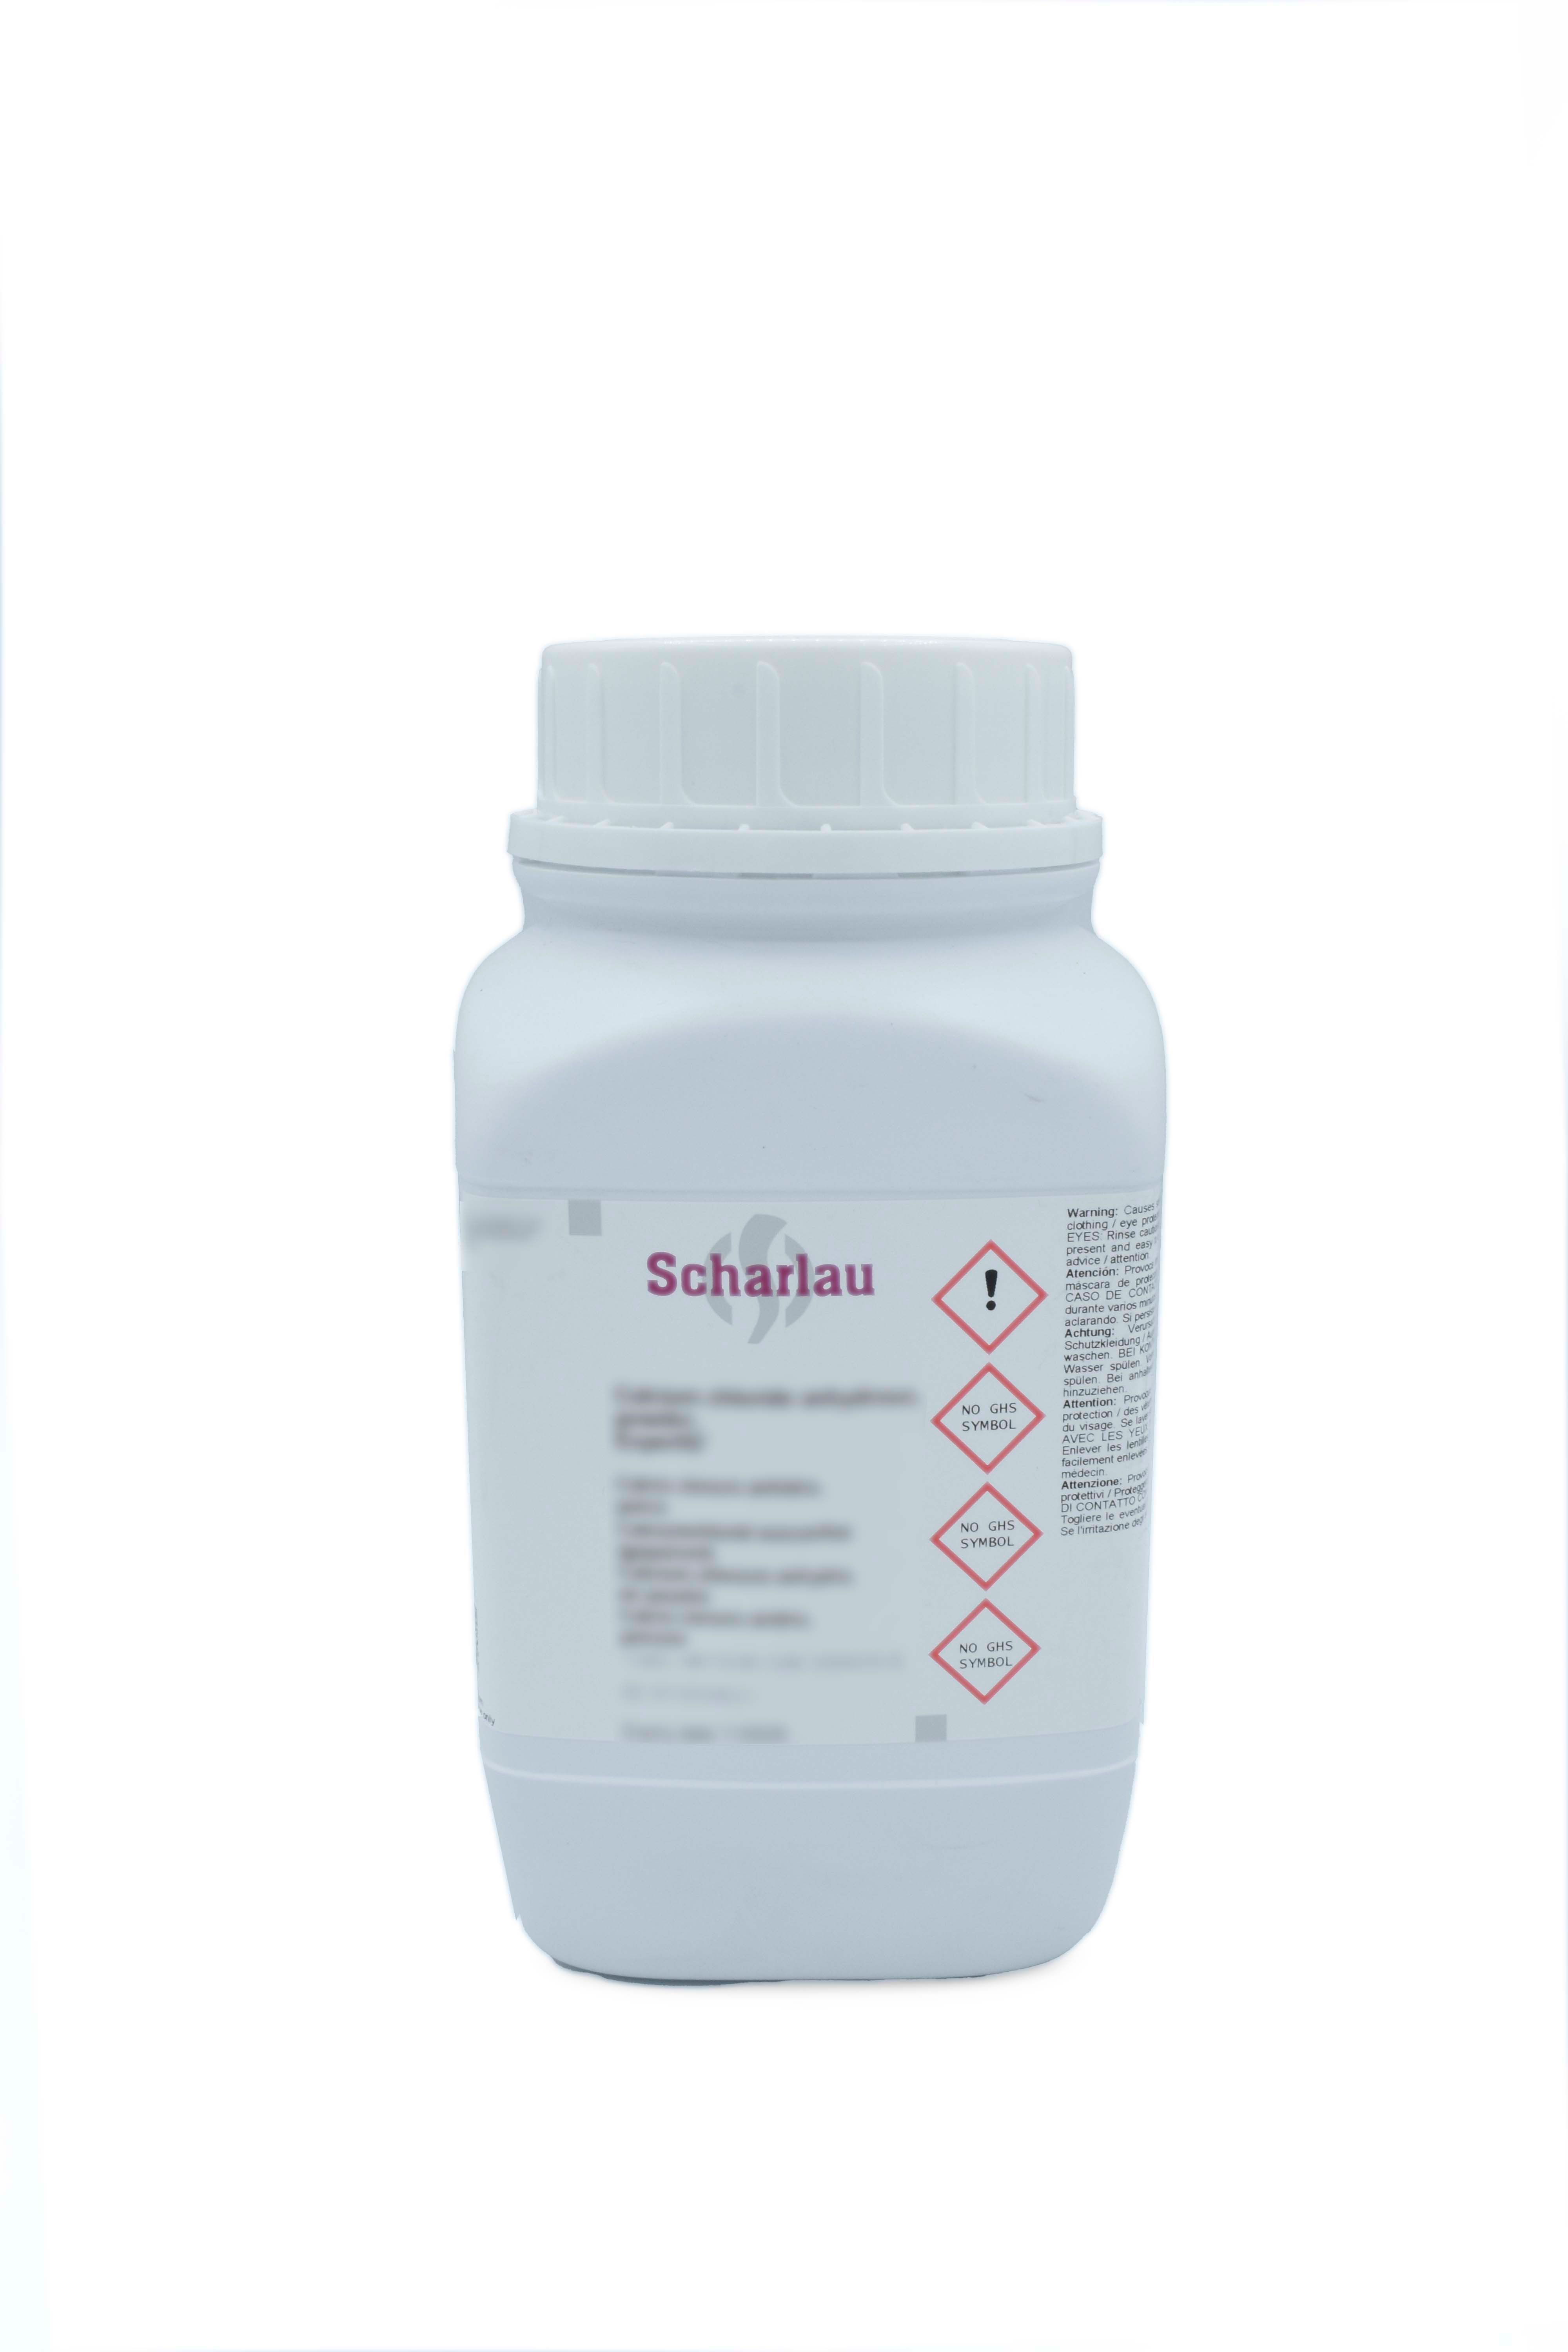 Parafina plastificada, pastillas, punto de fusión 56 - 58 °C